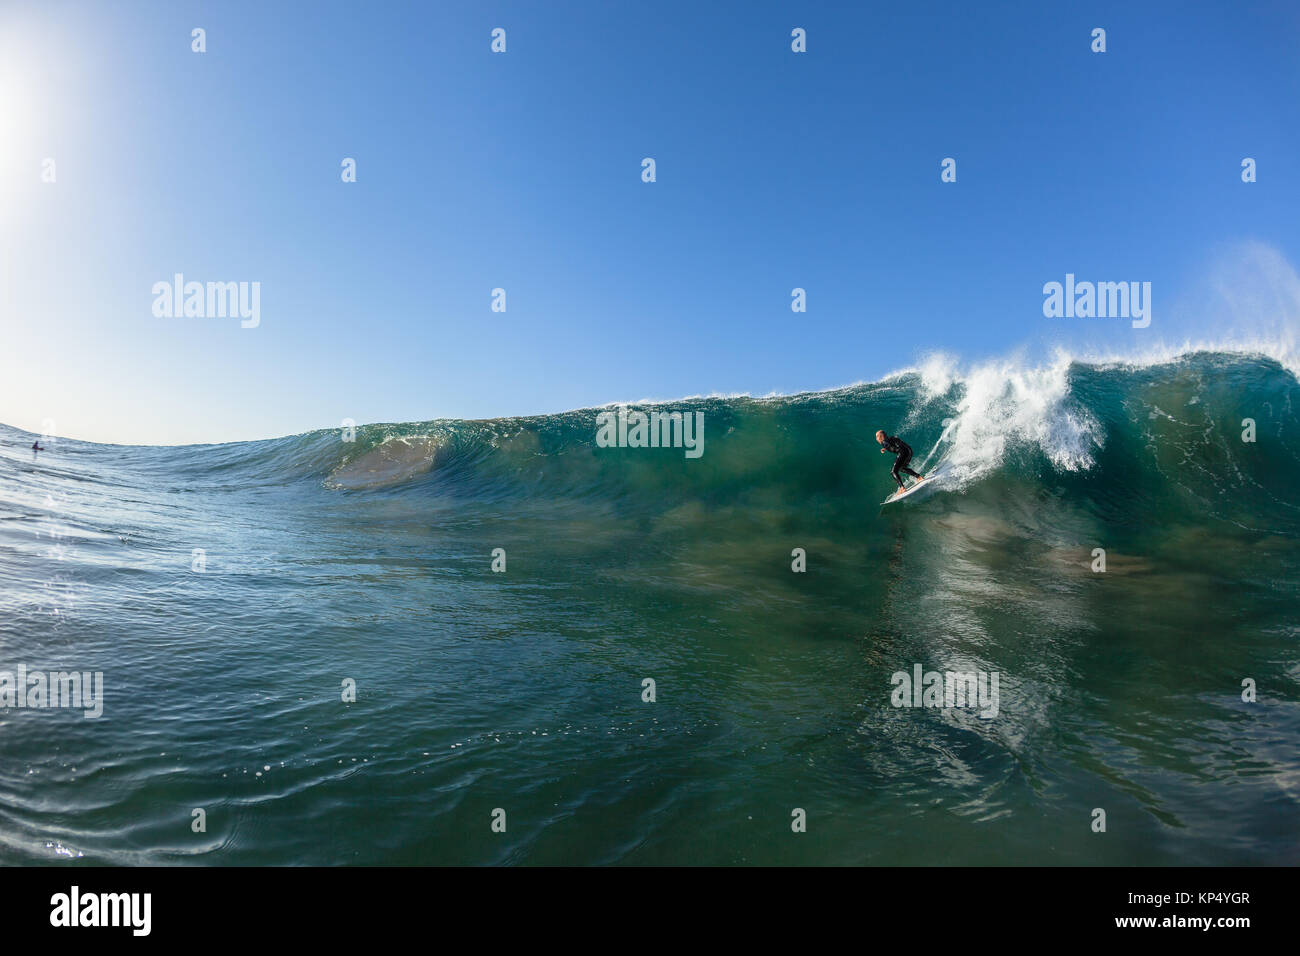 Surfen surfer Herunterfallen vertikale Welle schwimmen Wasser Foto. Stockfoto